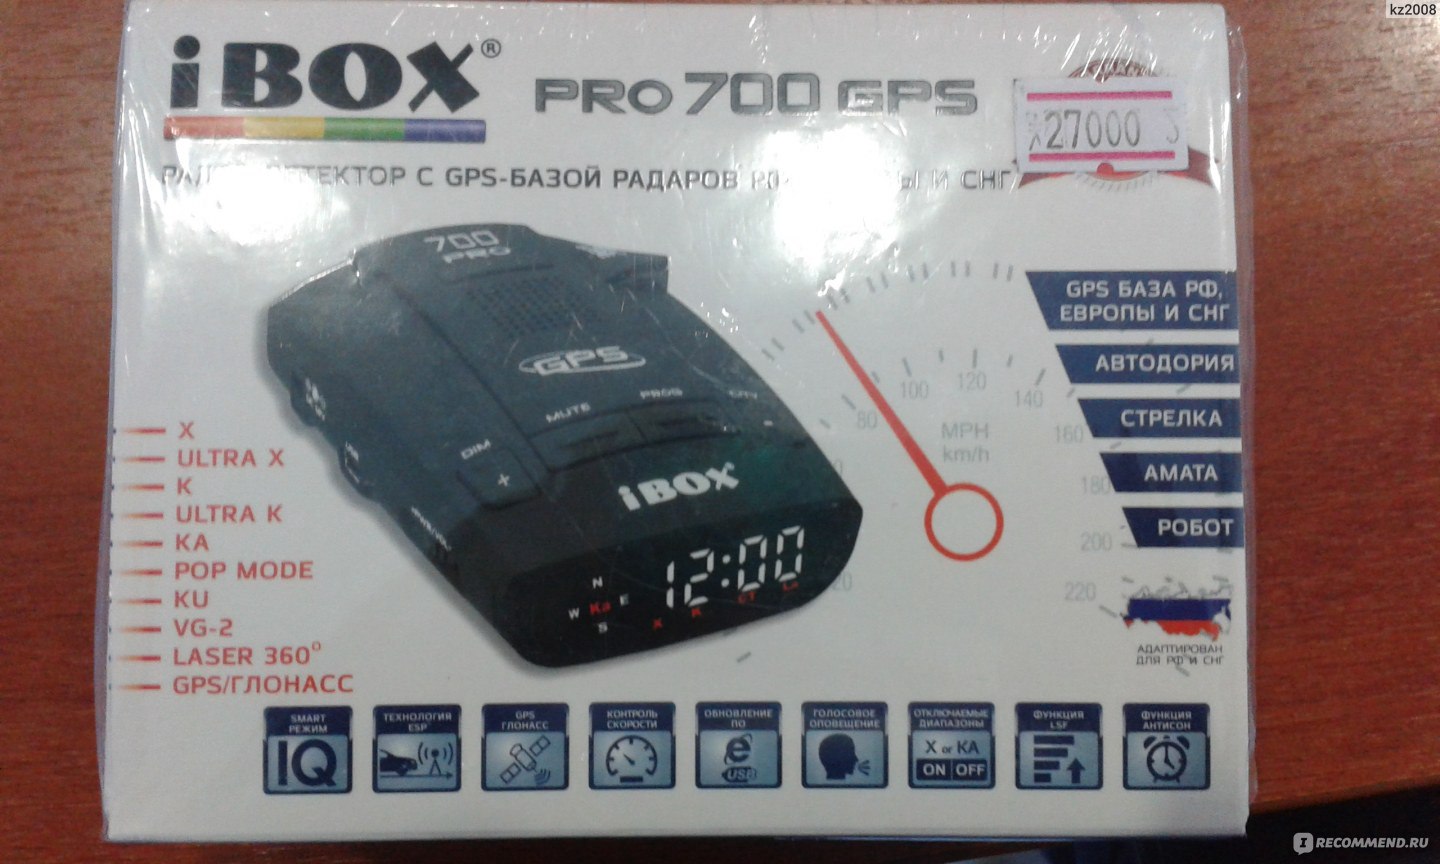 Радар детекторы ibox отзывы. Радар-детектор IBOX Pro 700 GPS. Антирадар IBOX x10 GPS. Дисплей для IBOX Pro 700 GPS. I Box антирадар SIM переходник.